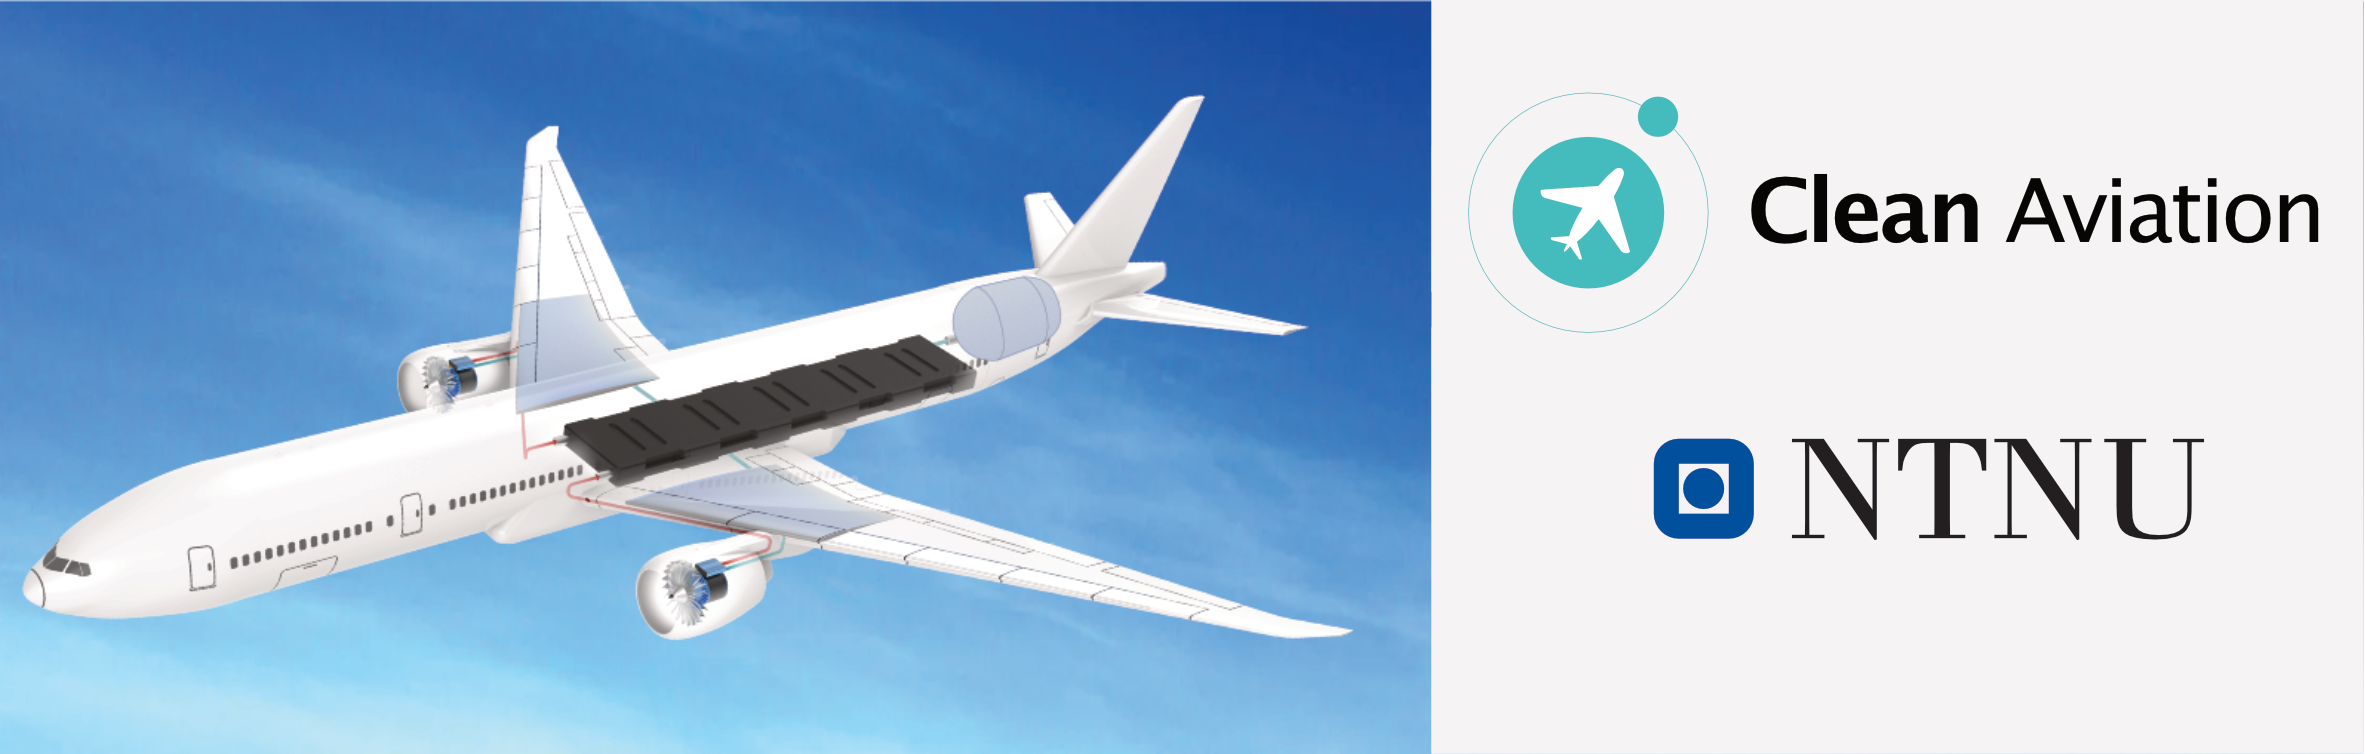 Hydrogen airplane. illustration